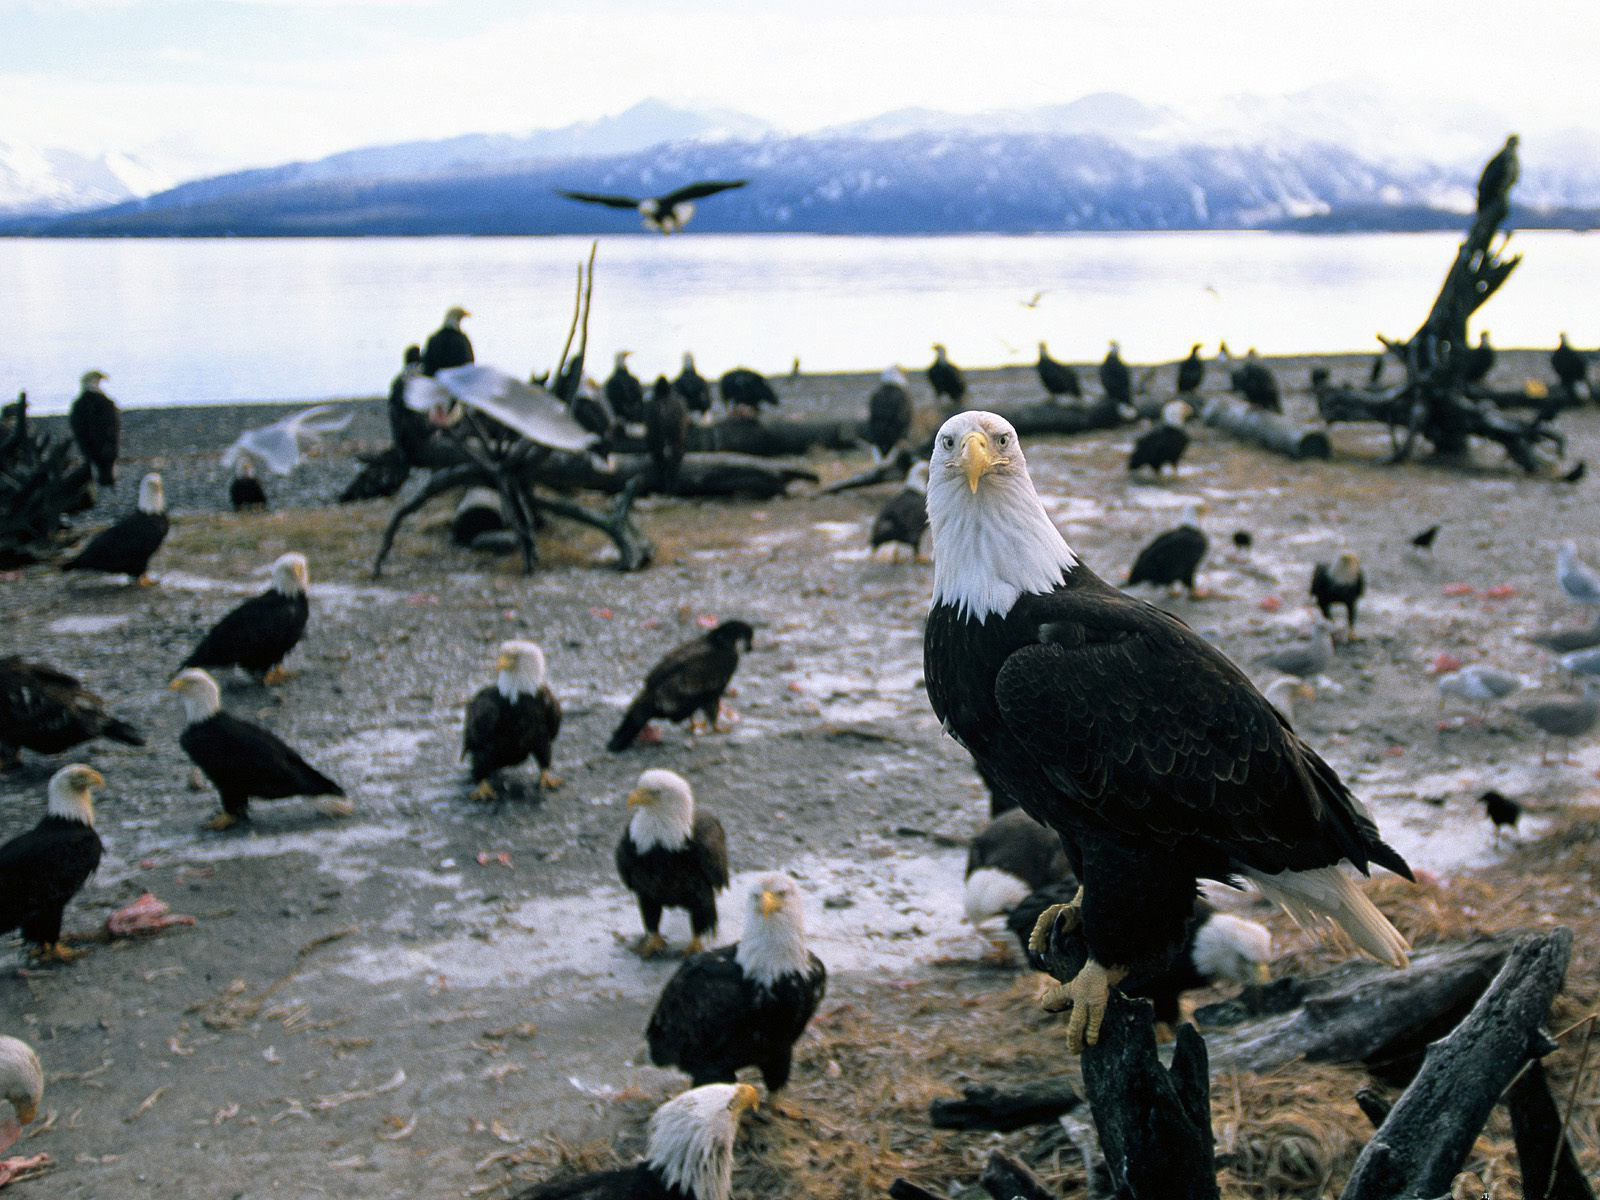 mobile desktop background hd eagles images